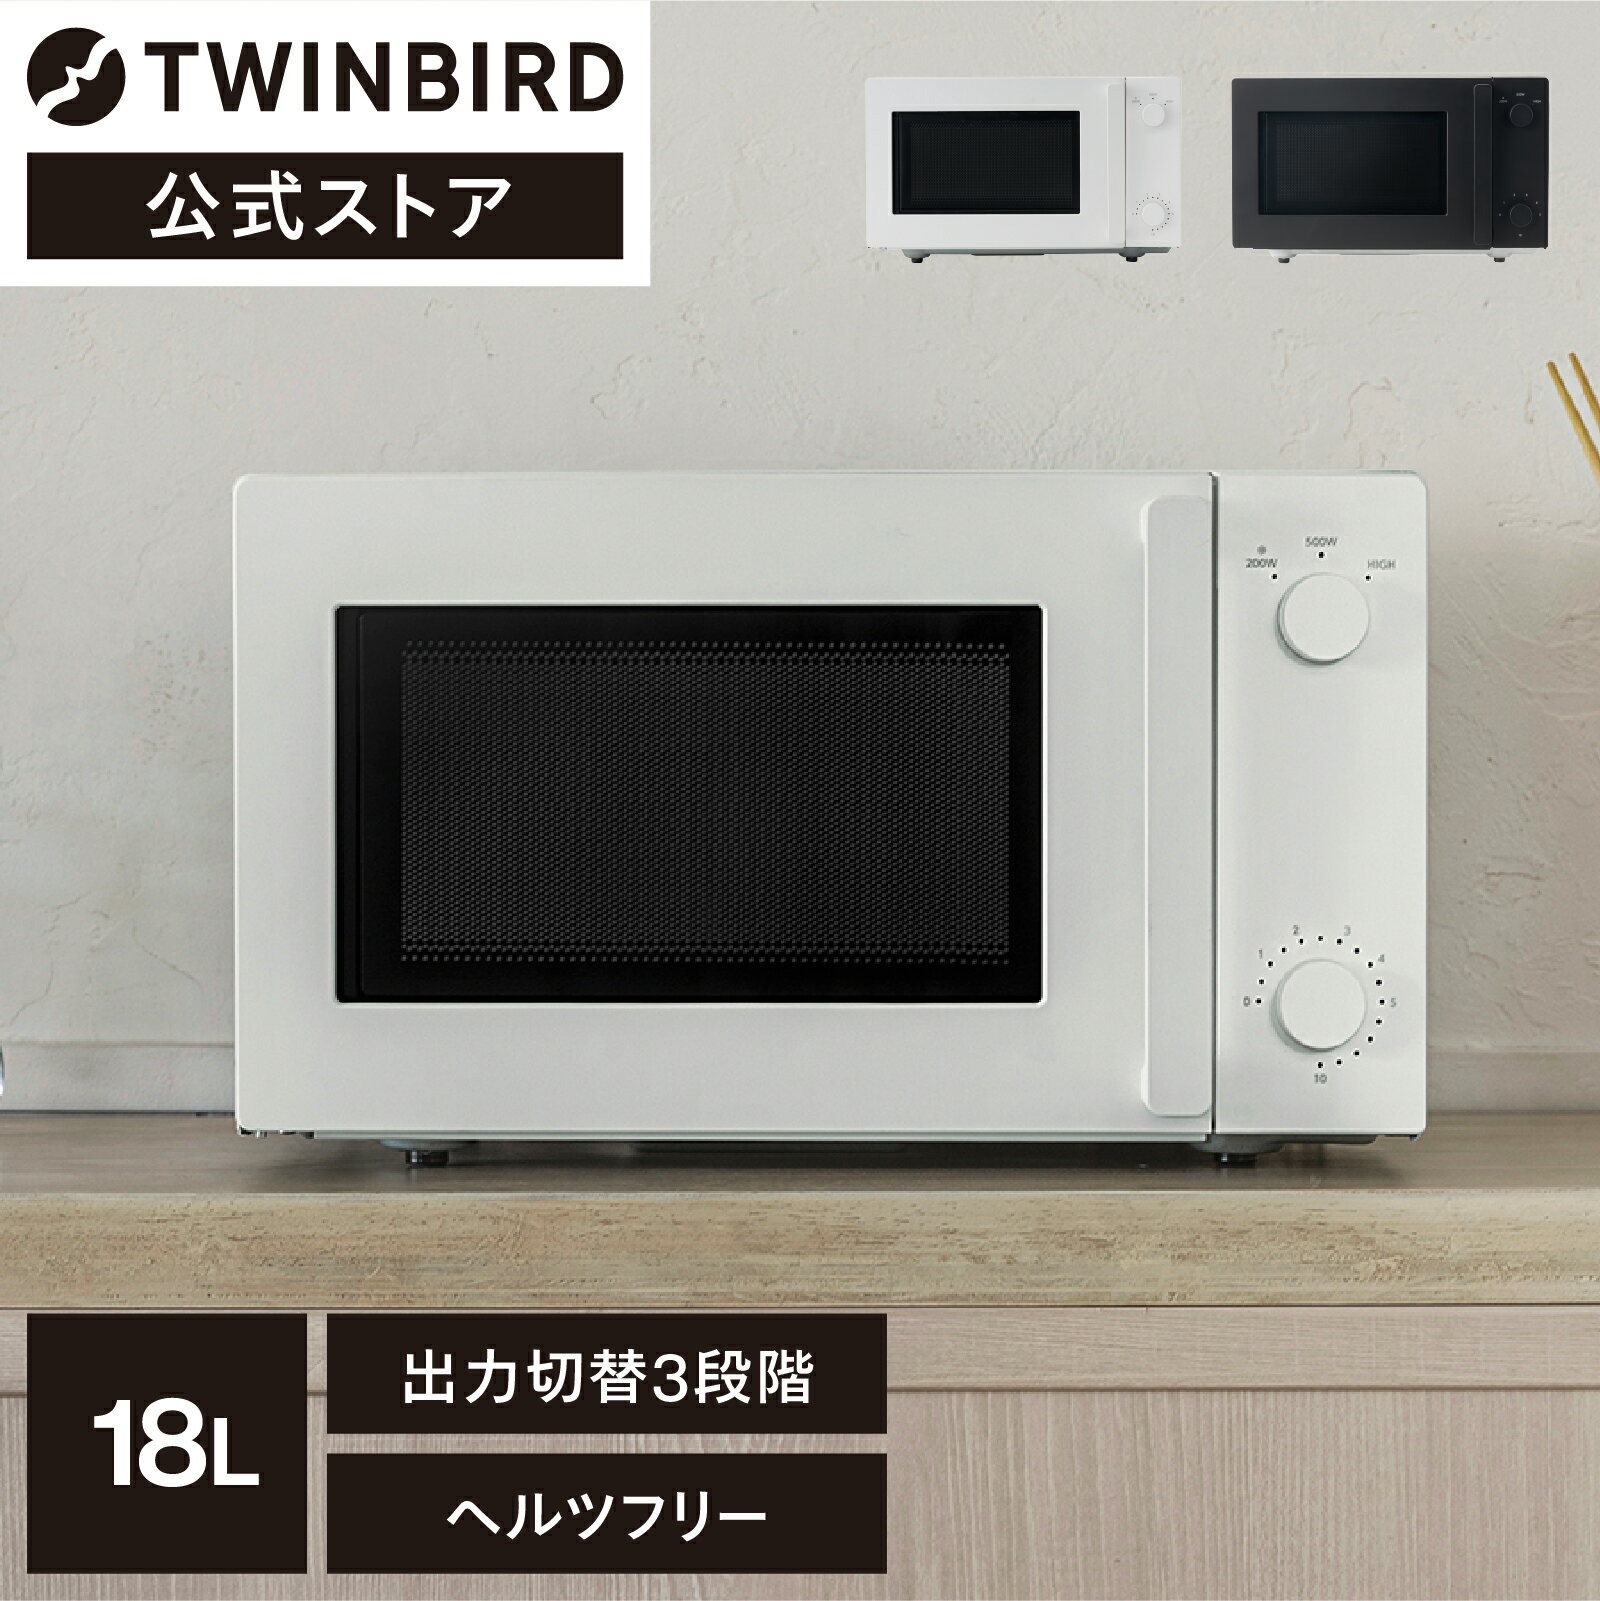 【公式】TWINBIRD 電子レンジ 18L DR-E268W DR-E268B ツインバード TWINBIRD レンジ 白 黒 単機能レンジ オーブンレンジ 一人暮らし